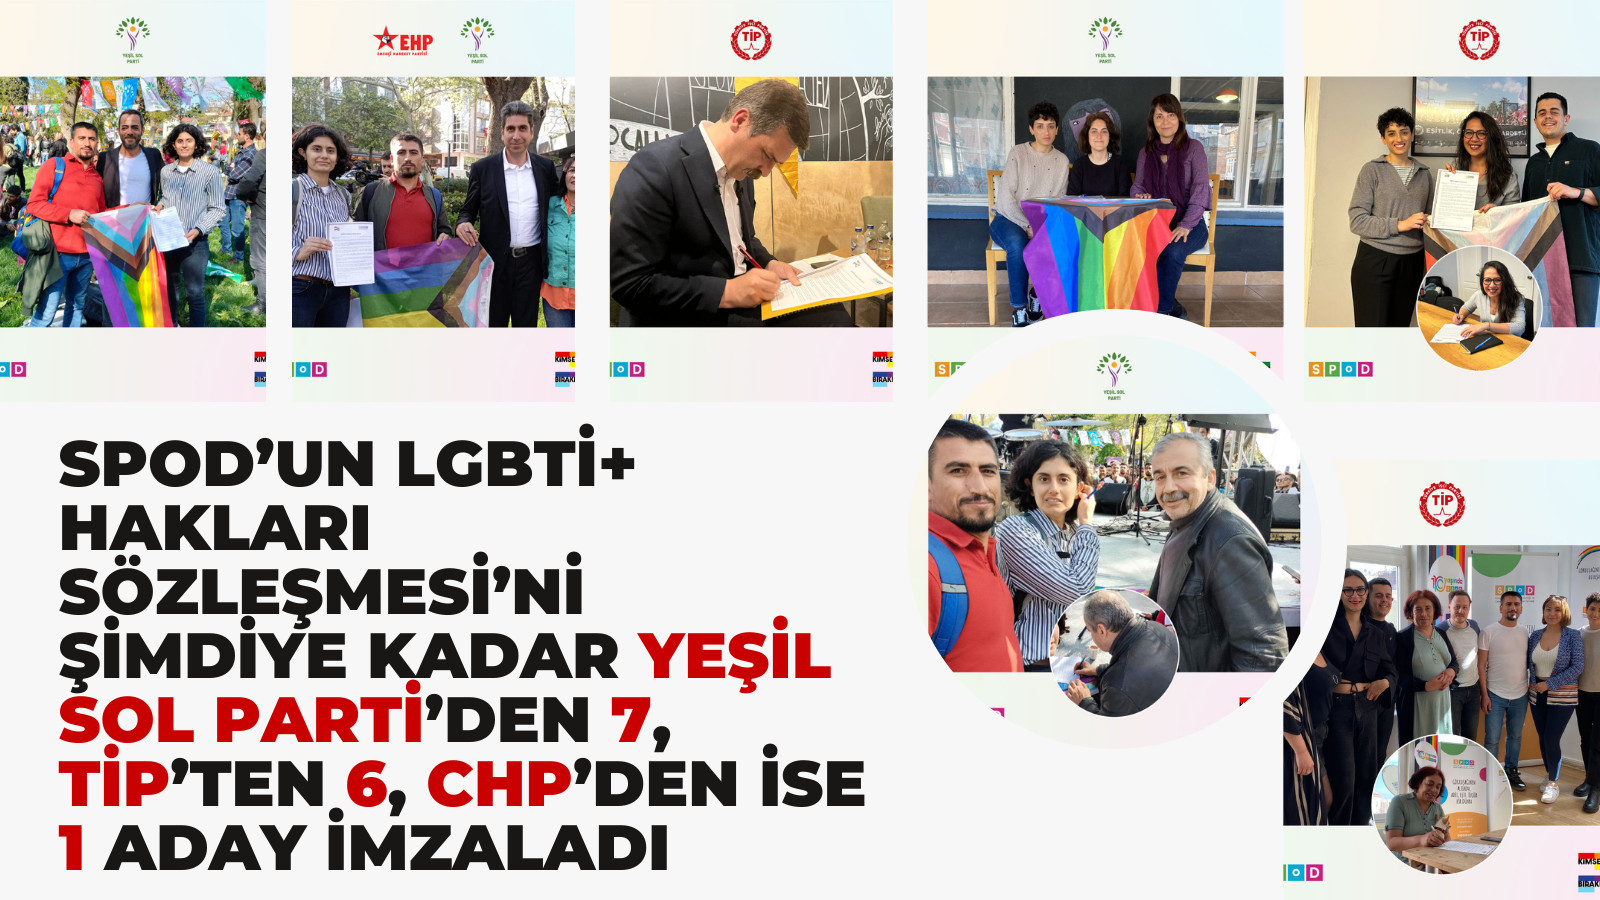 SPoD’un LGBTİ+ Hakları Sözleşmesi’ne şimdiye kadar 14 imza | Kaos GL - LGBTİ+ Haber Portalı Haber